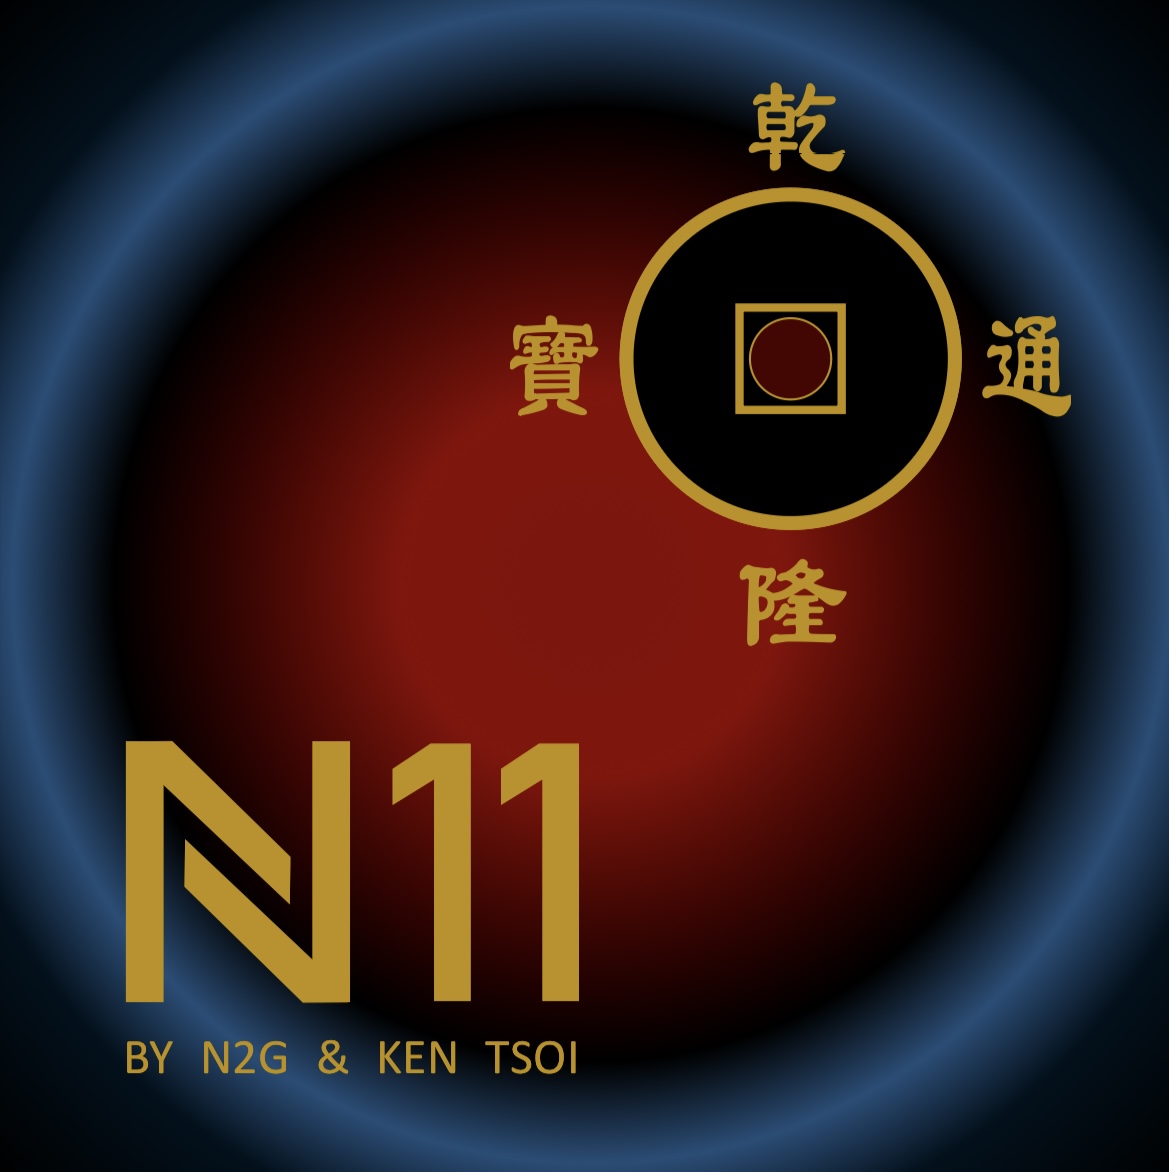 N11 By N2G & KEN TSOI